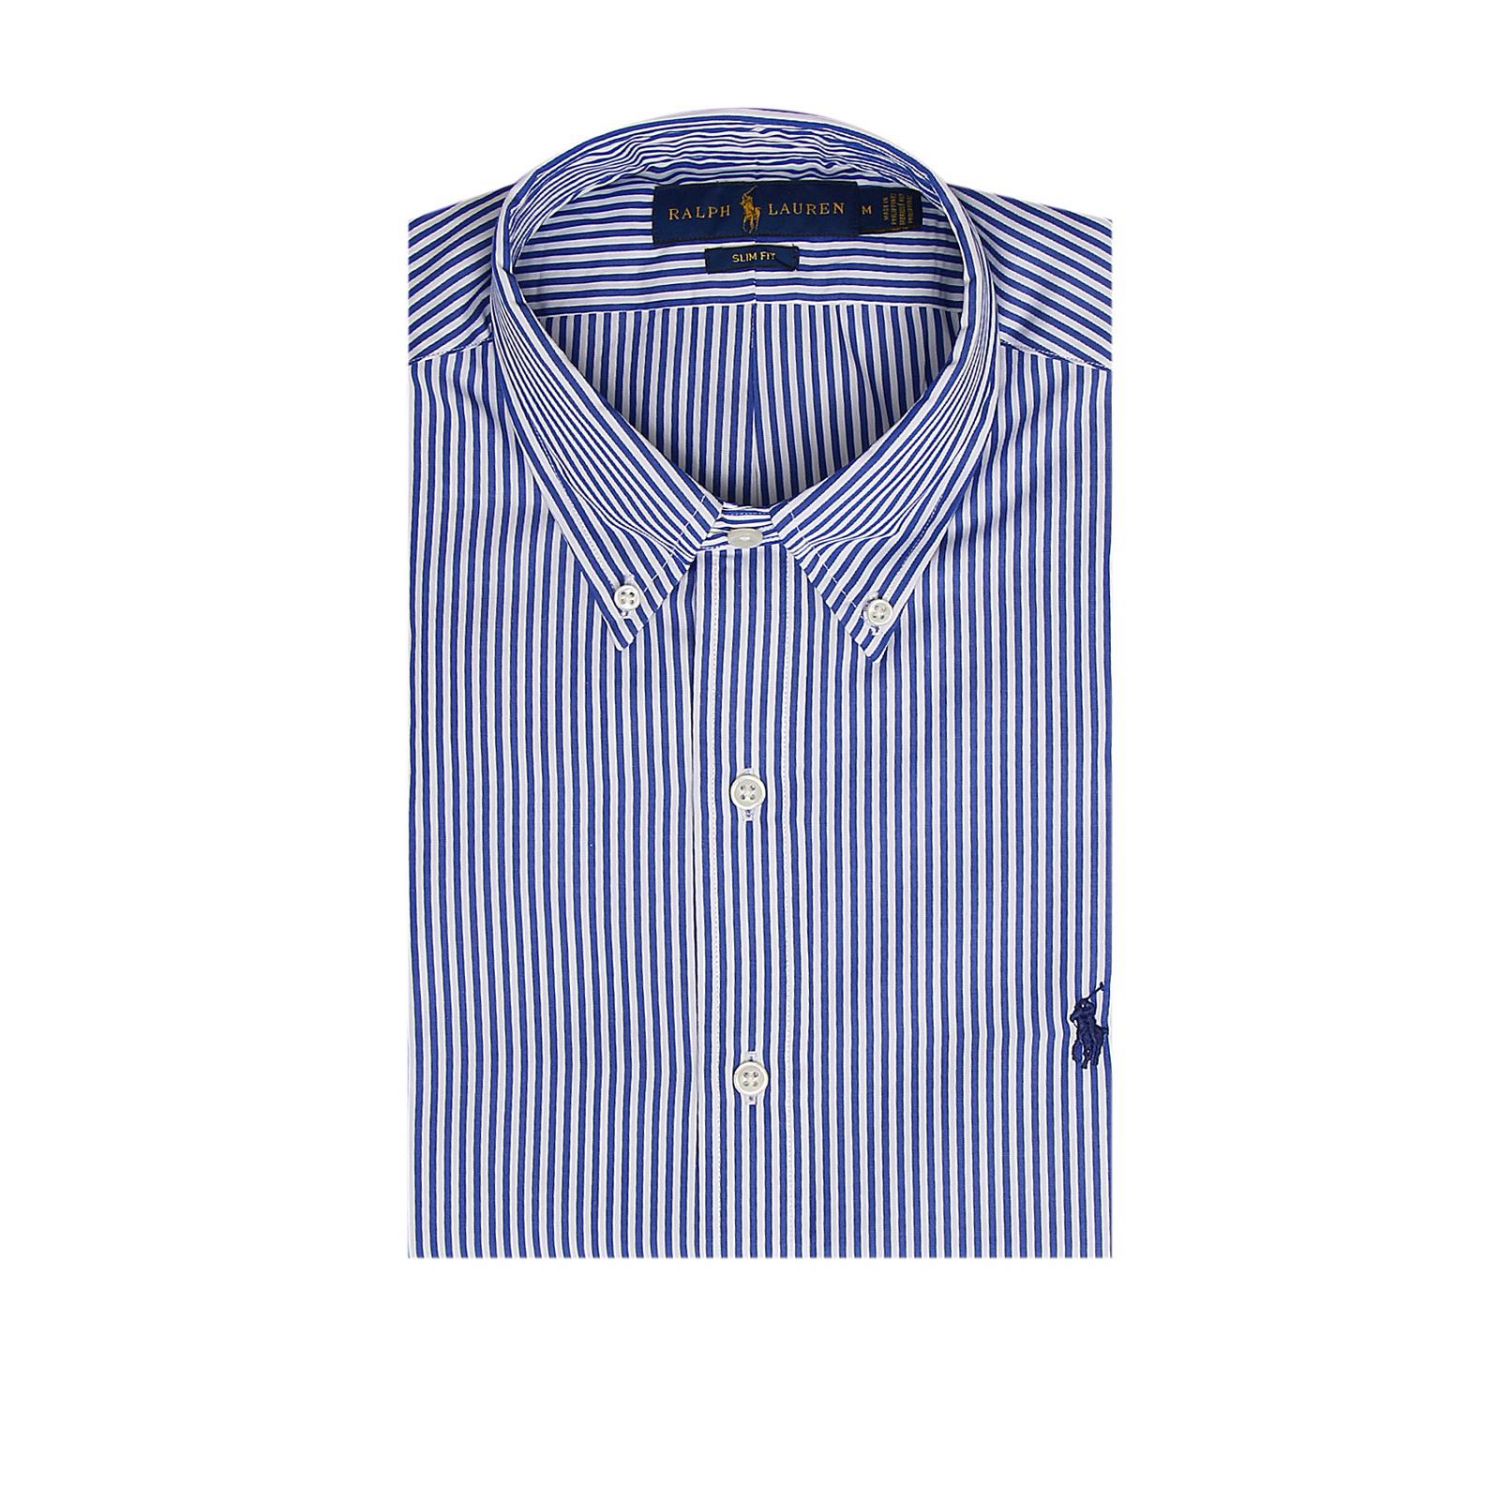 Polo Ralph Lauren Outlet: Shirt men | Shirt Polo Ralph Lauren Men Blue ...